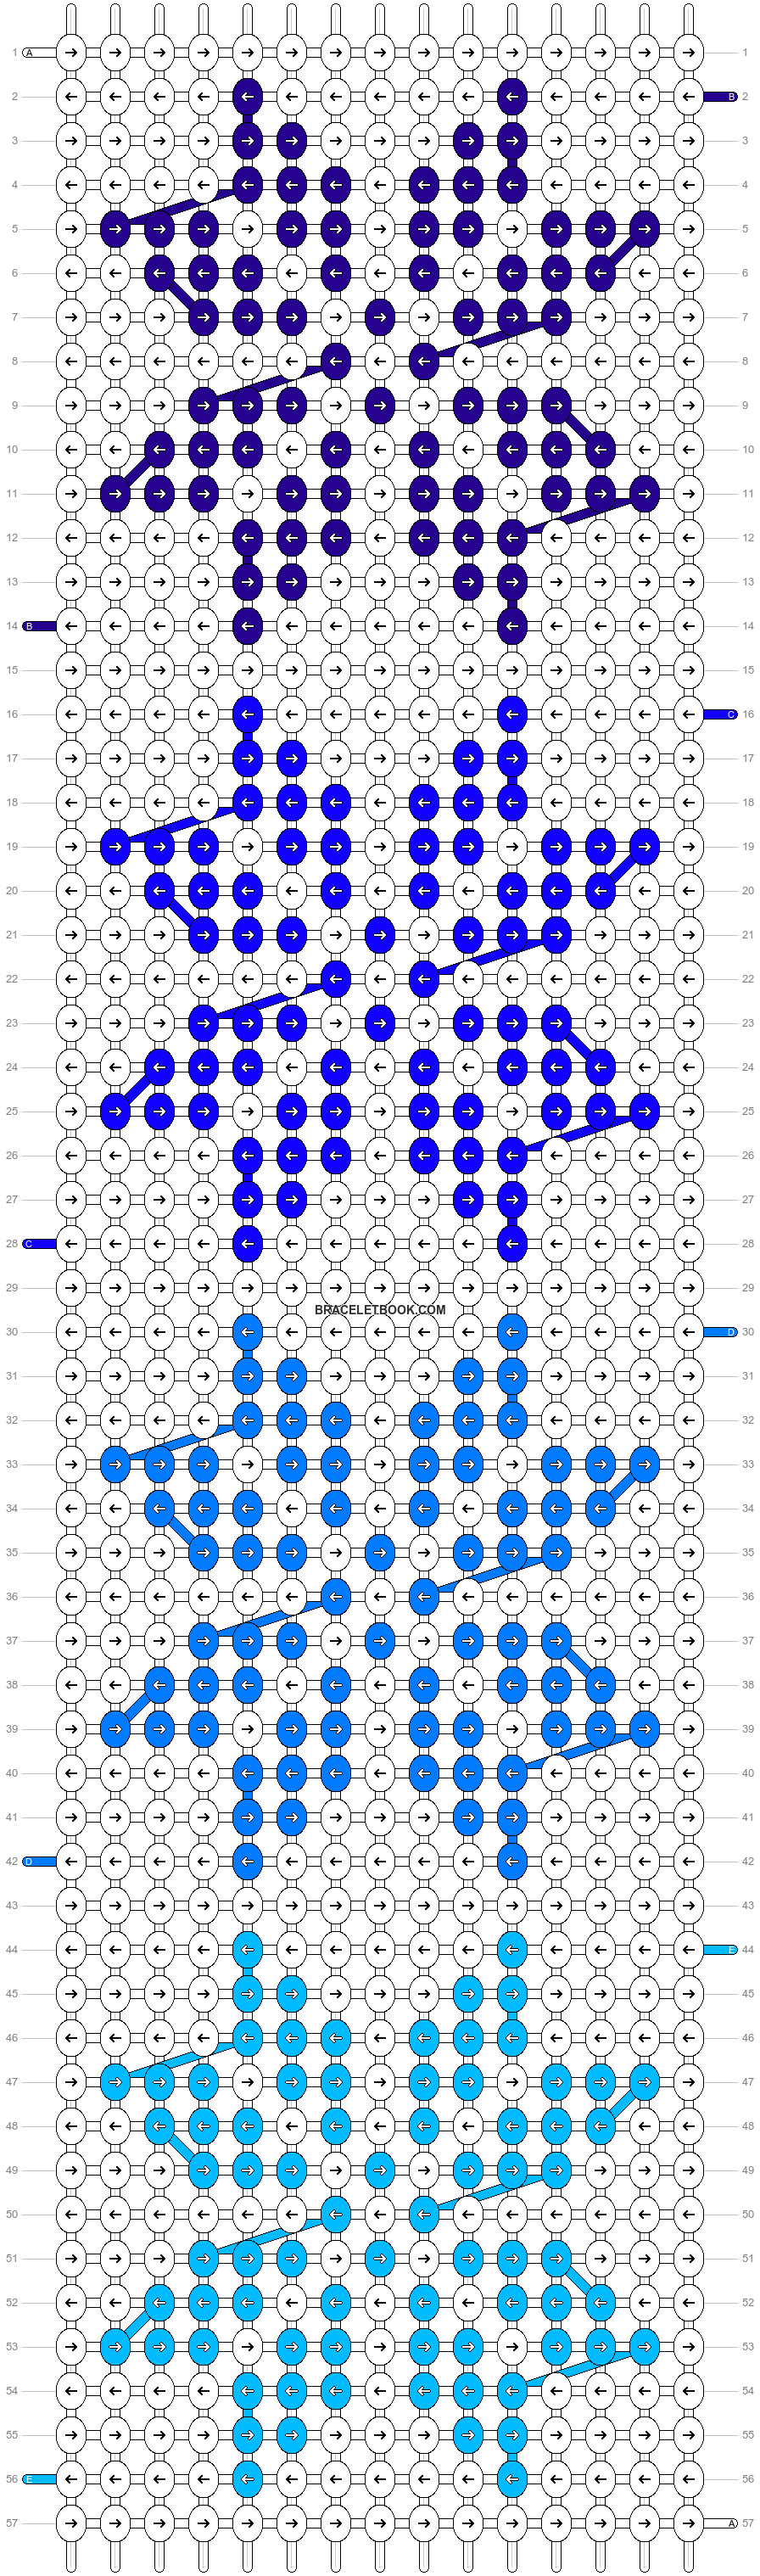 Alpha pattern #48750 | BraceletBook